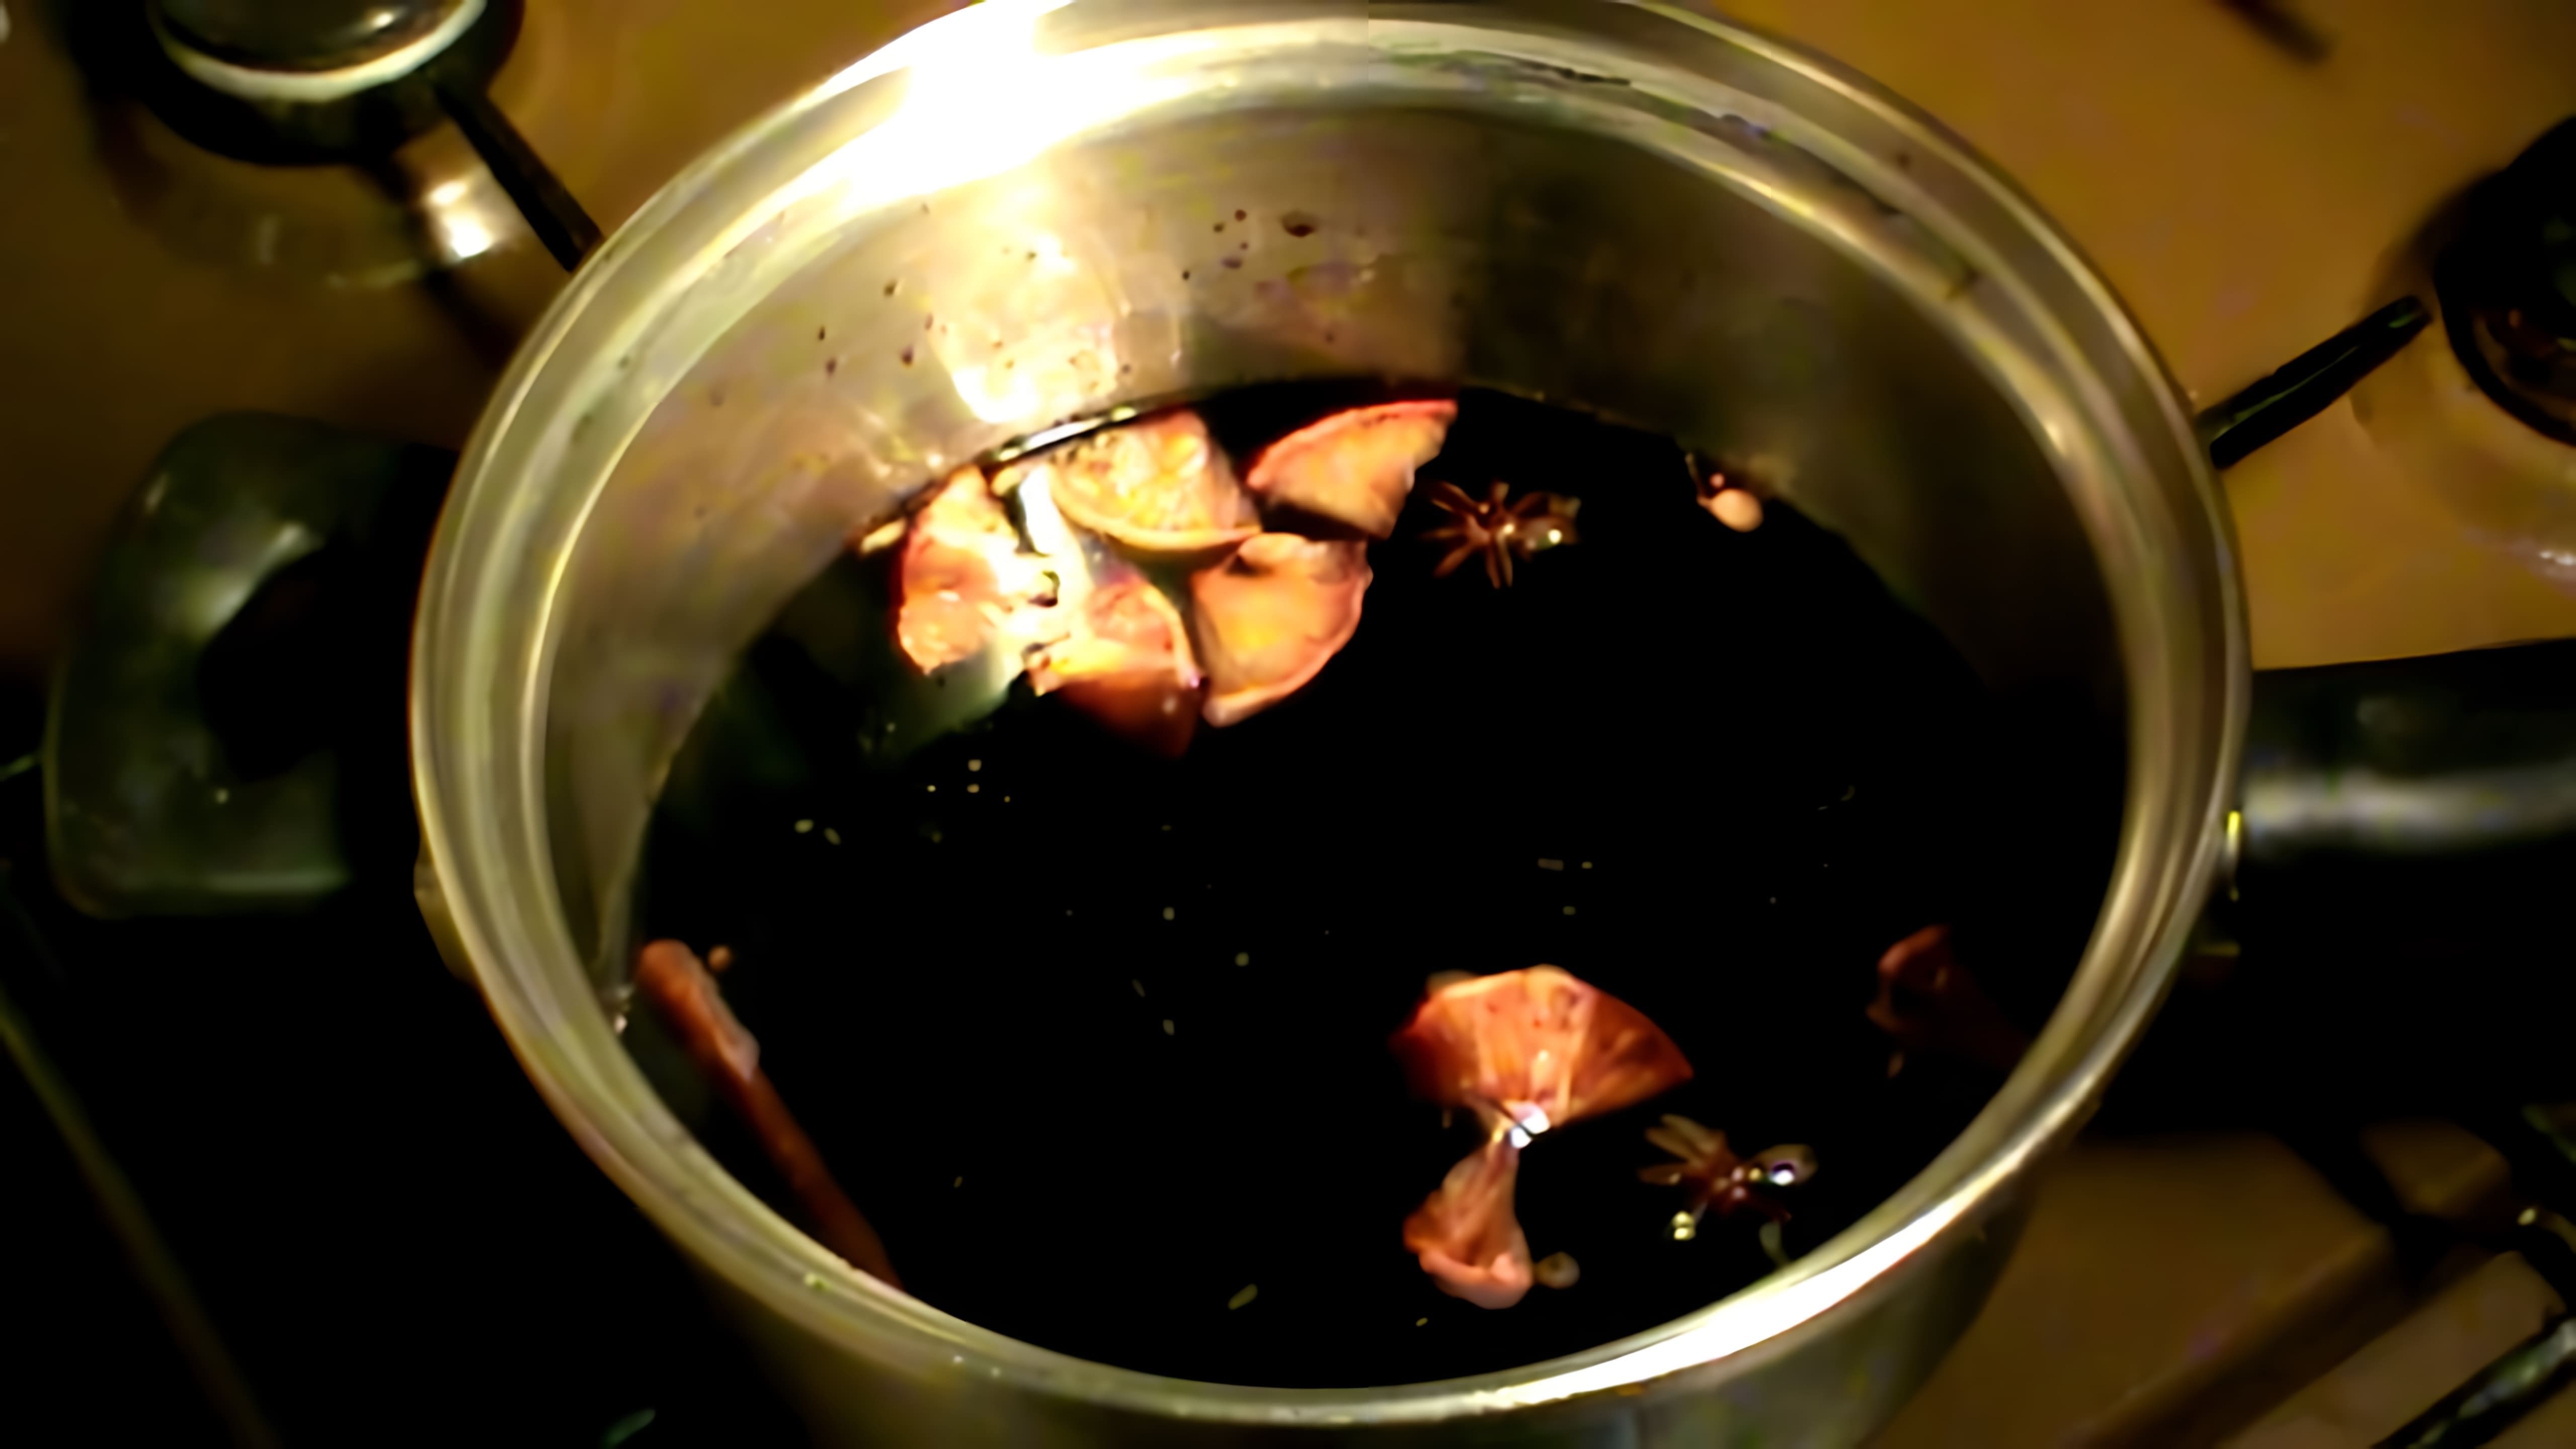 В этом видео демонстрируется процесс приготовления глинтвейна - горячего напитка, который идеально подходит для холодного зимнего вечера